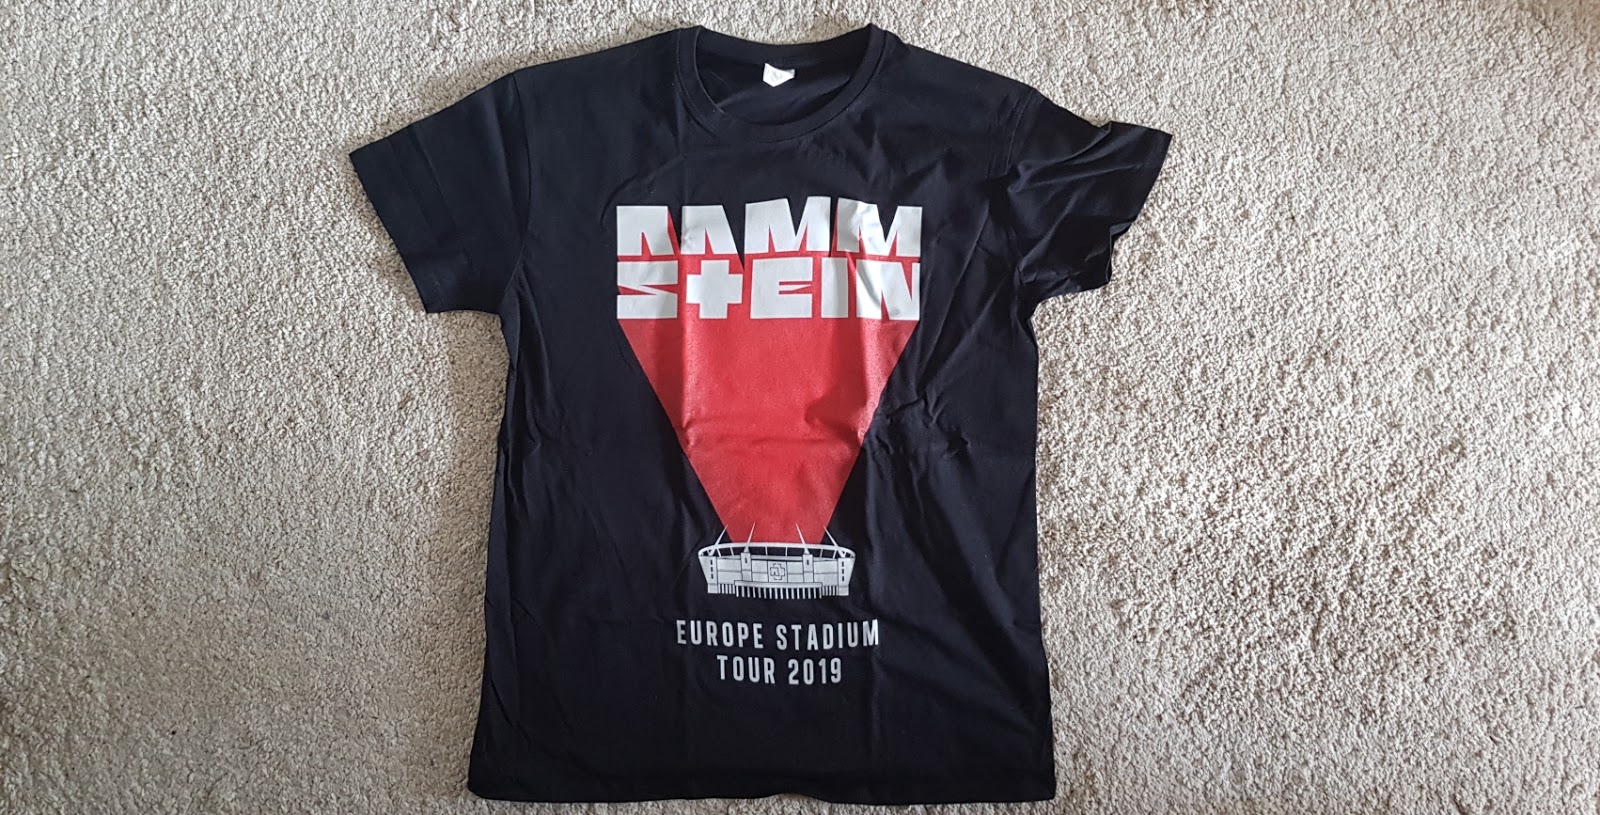 rammstein tour t shirt 2022